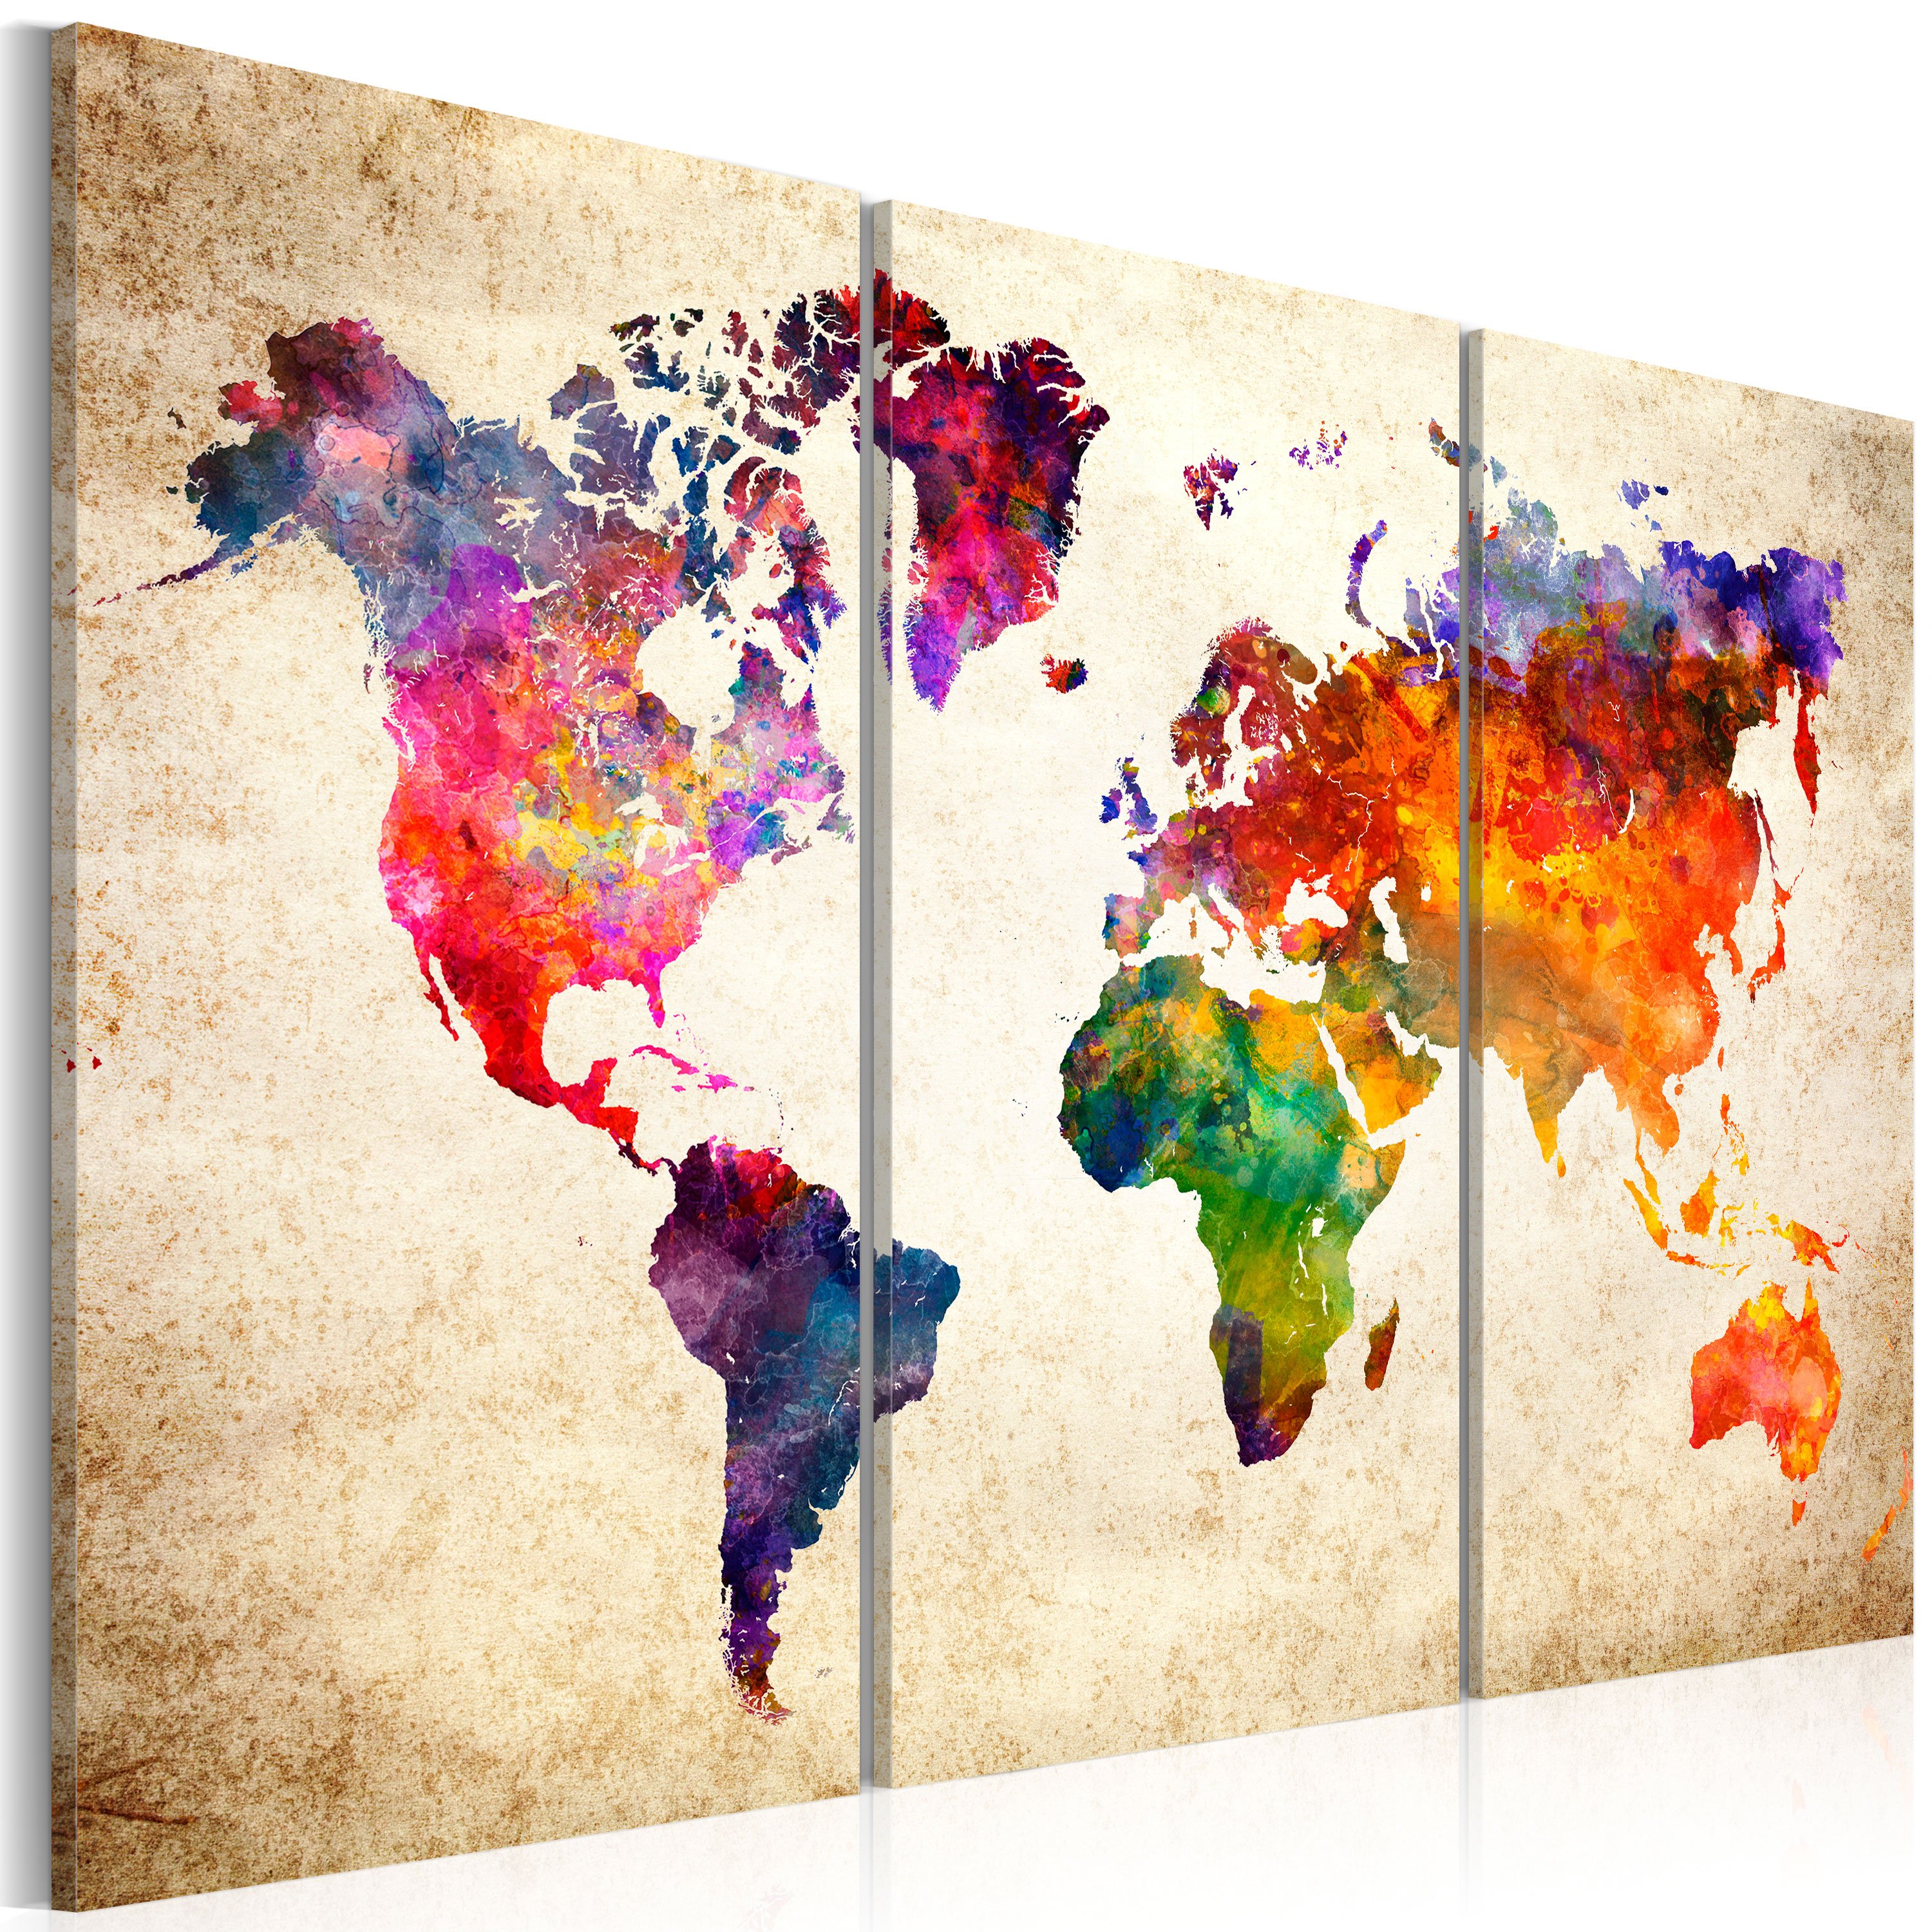 Kunstdruck auf Leinwand \'The World\'s Watercolor\' kaufen KunstLoft | Map in